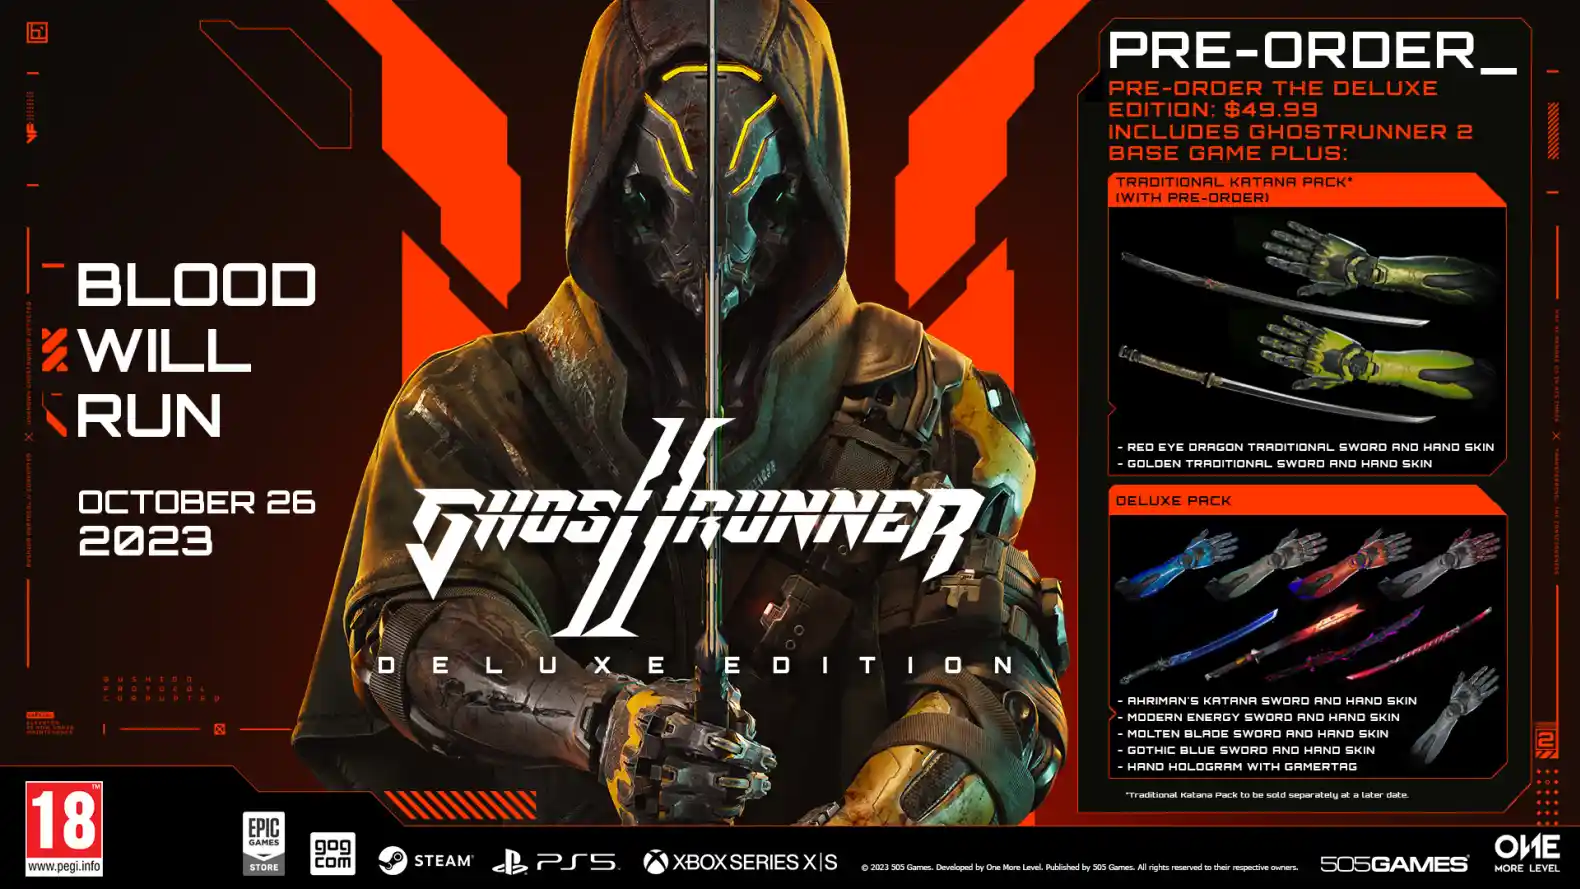 Ghostrunner 2 - rivelata la data di uscita e le edizioni Deluxe e Brutal: aperti i preorder